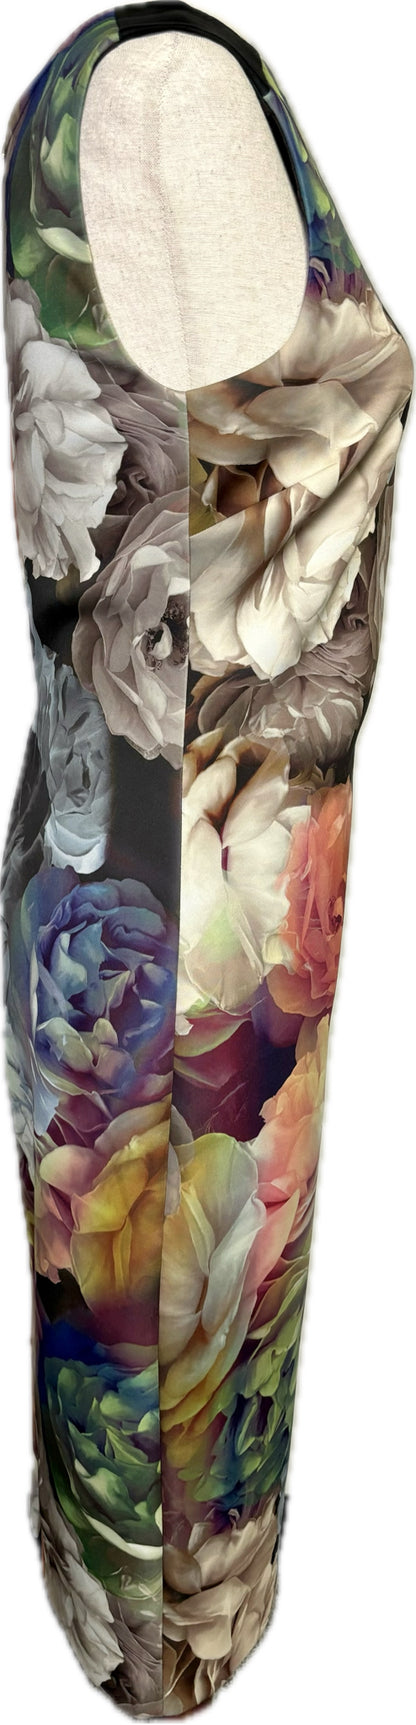 Ted Baker Floral Dress